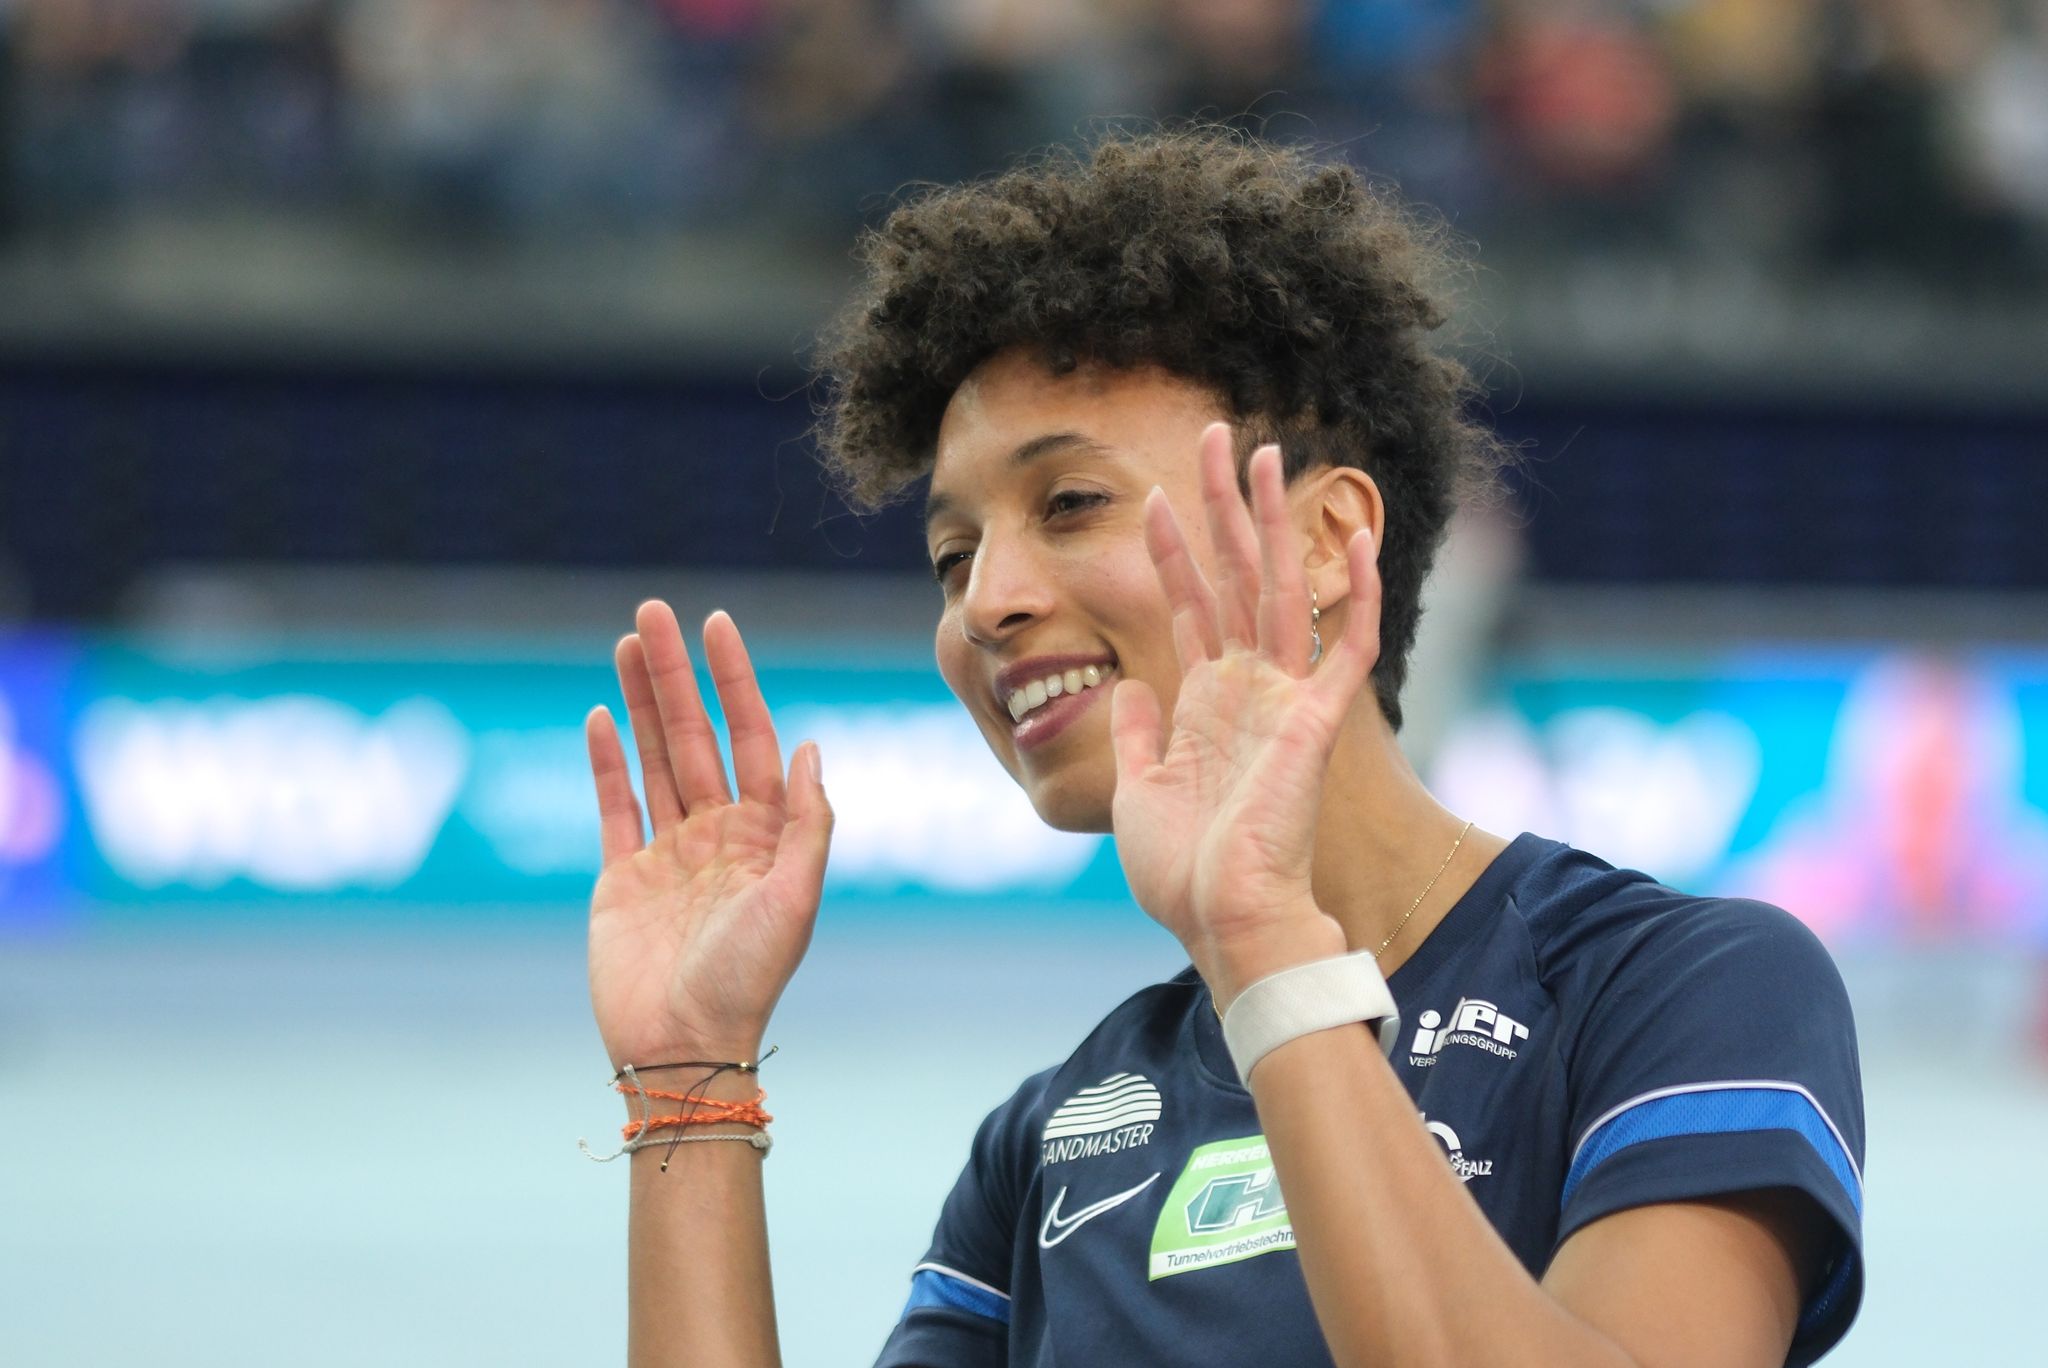 Leichtathletik-Stars Mihambo und Krause beeindrucken in Leipzig